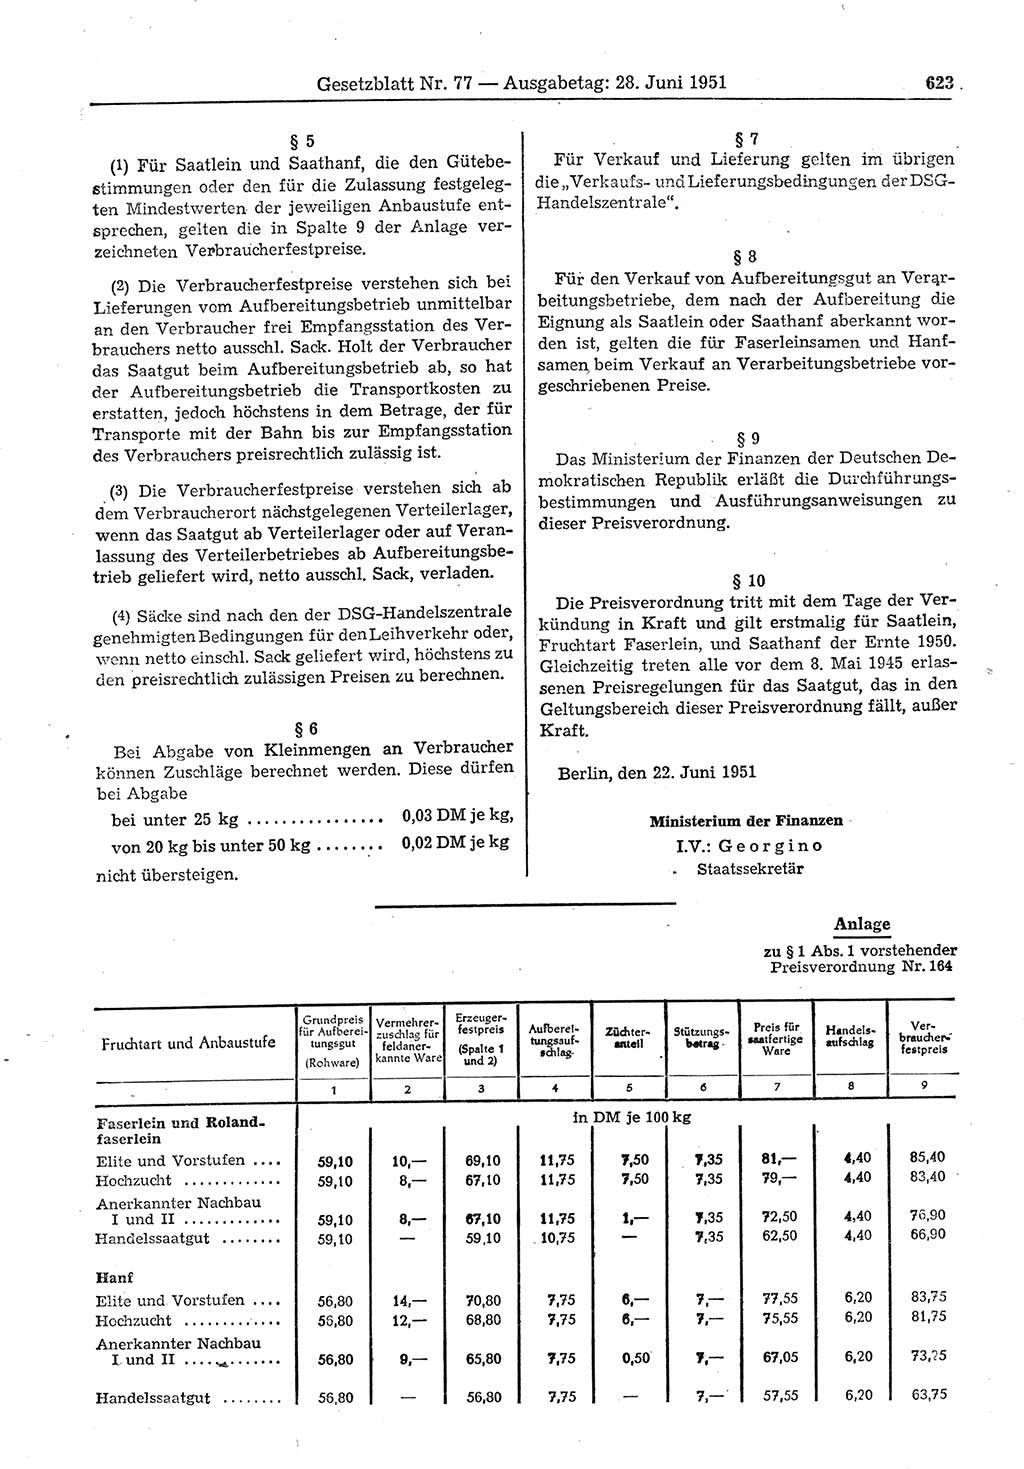 Gesetzblatt (GBl.) der Deutschen Demokratischen Republik (DDR) 1951, Seite 623 (GBl. DDR 1951, S. 623)